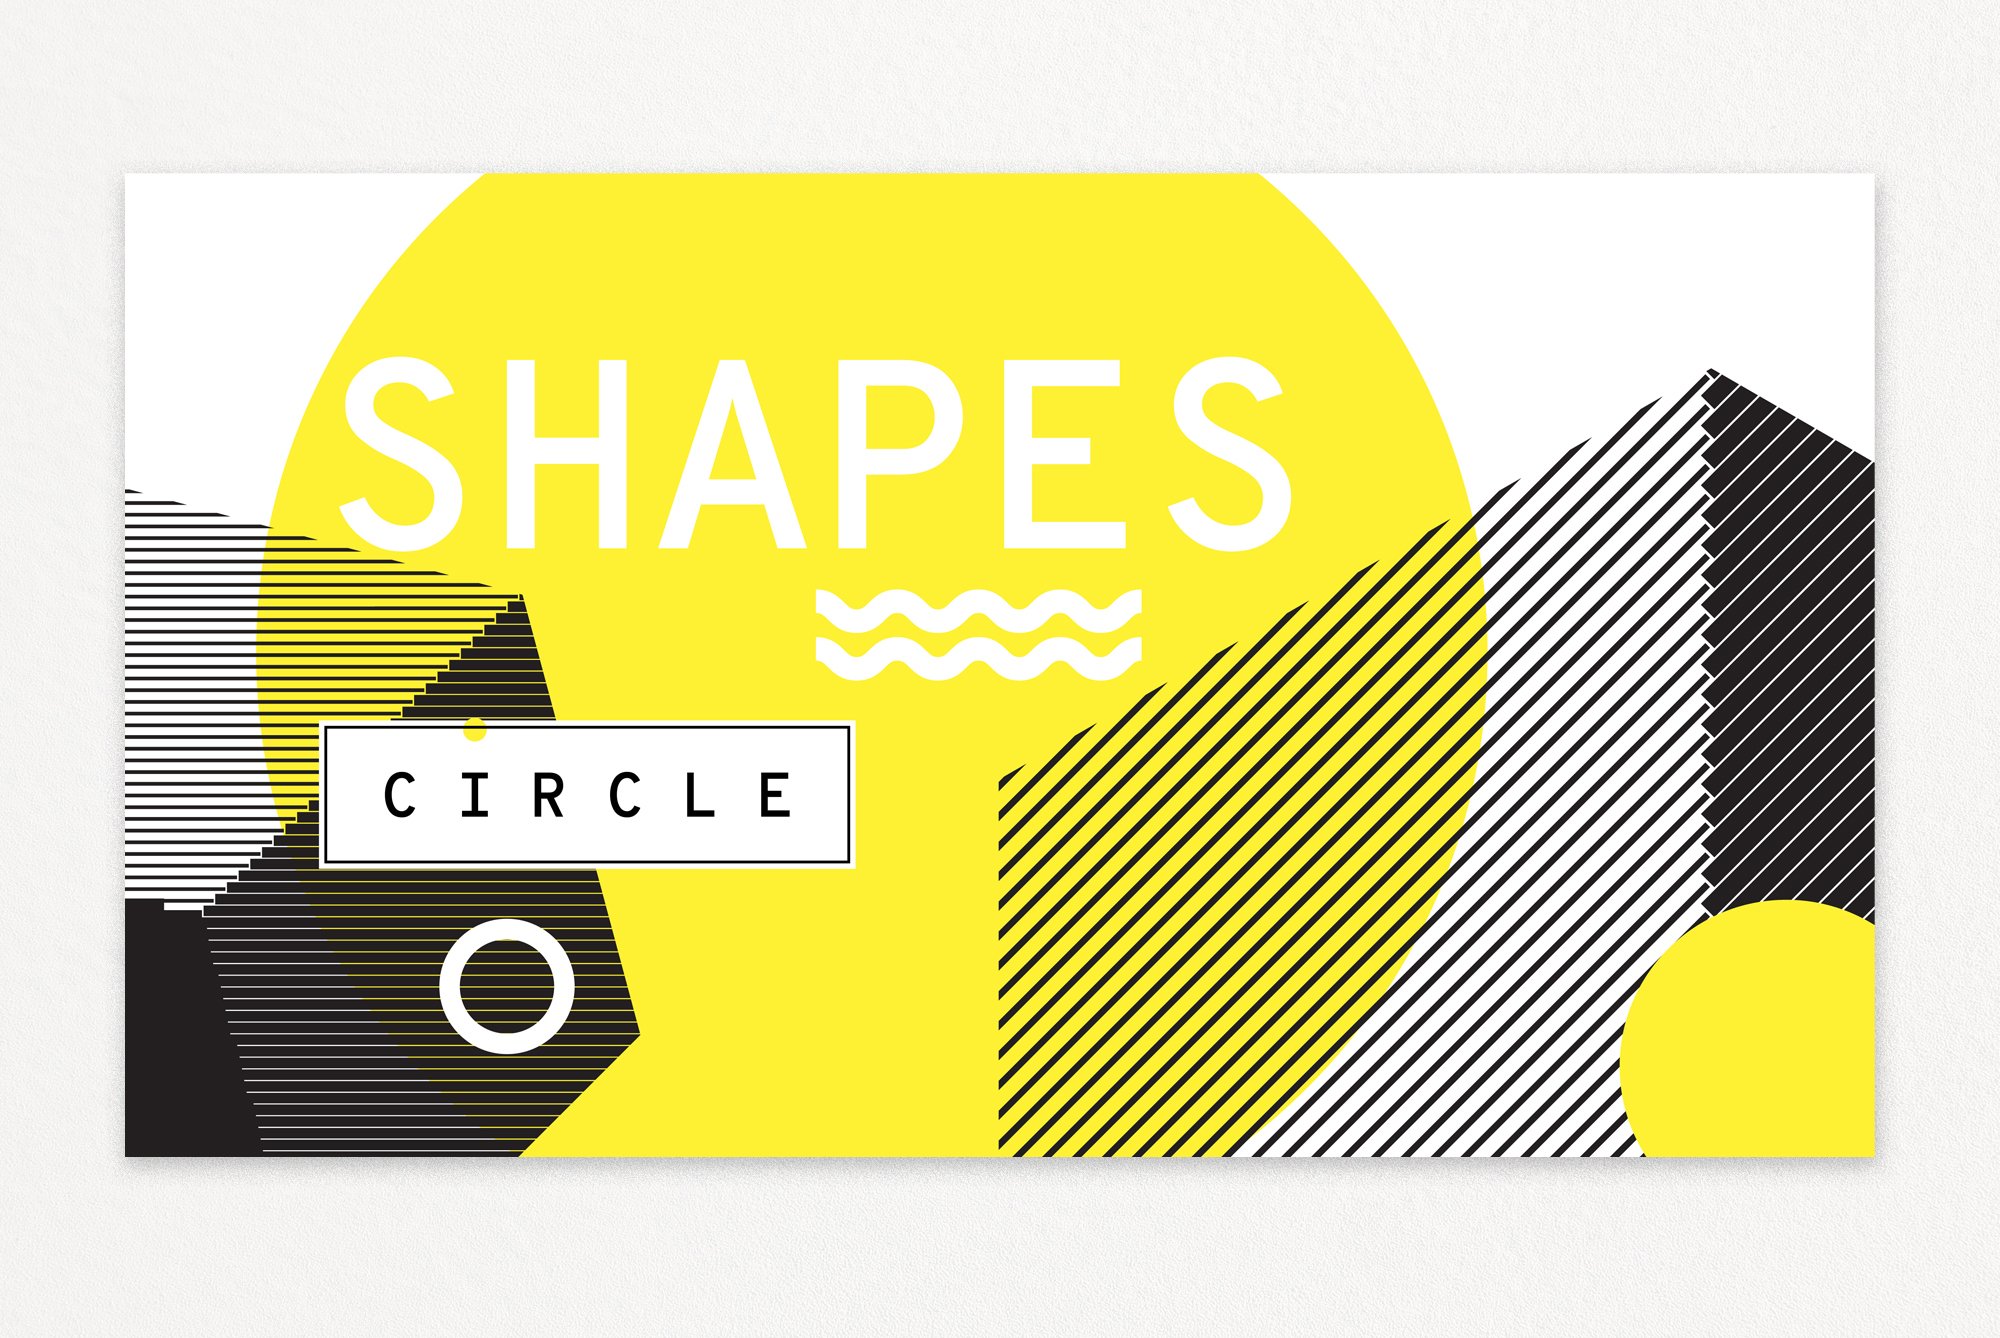 863 极简设计的抽象图形矢量元素和海报模板 60 geometric shapes 30 posters